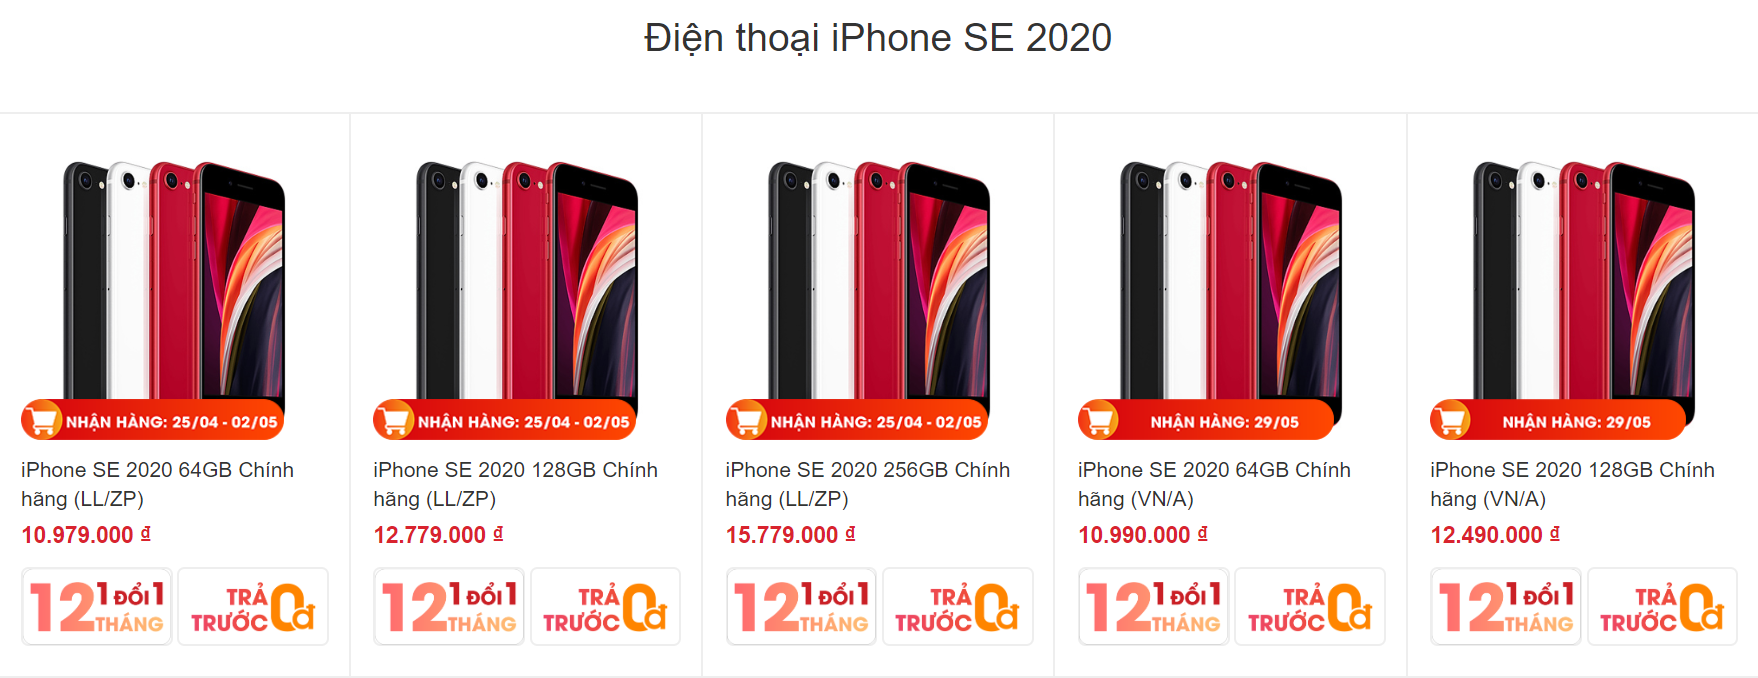 iPhone SE 2020 được đặt trước tại Việt Nam với giá chỉ hơn 10 triệu đồng - Ảnh 2.